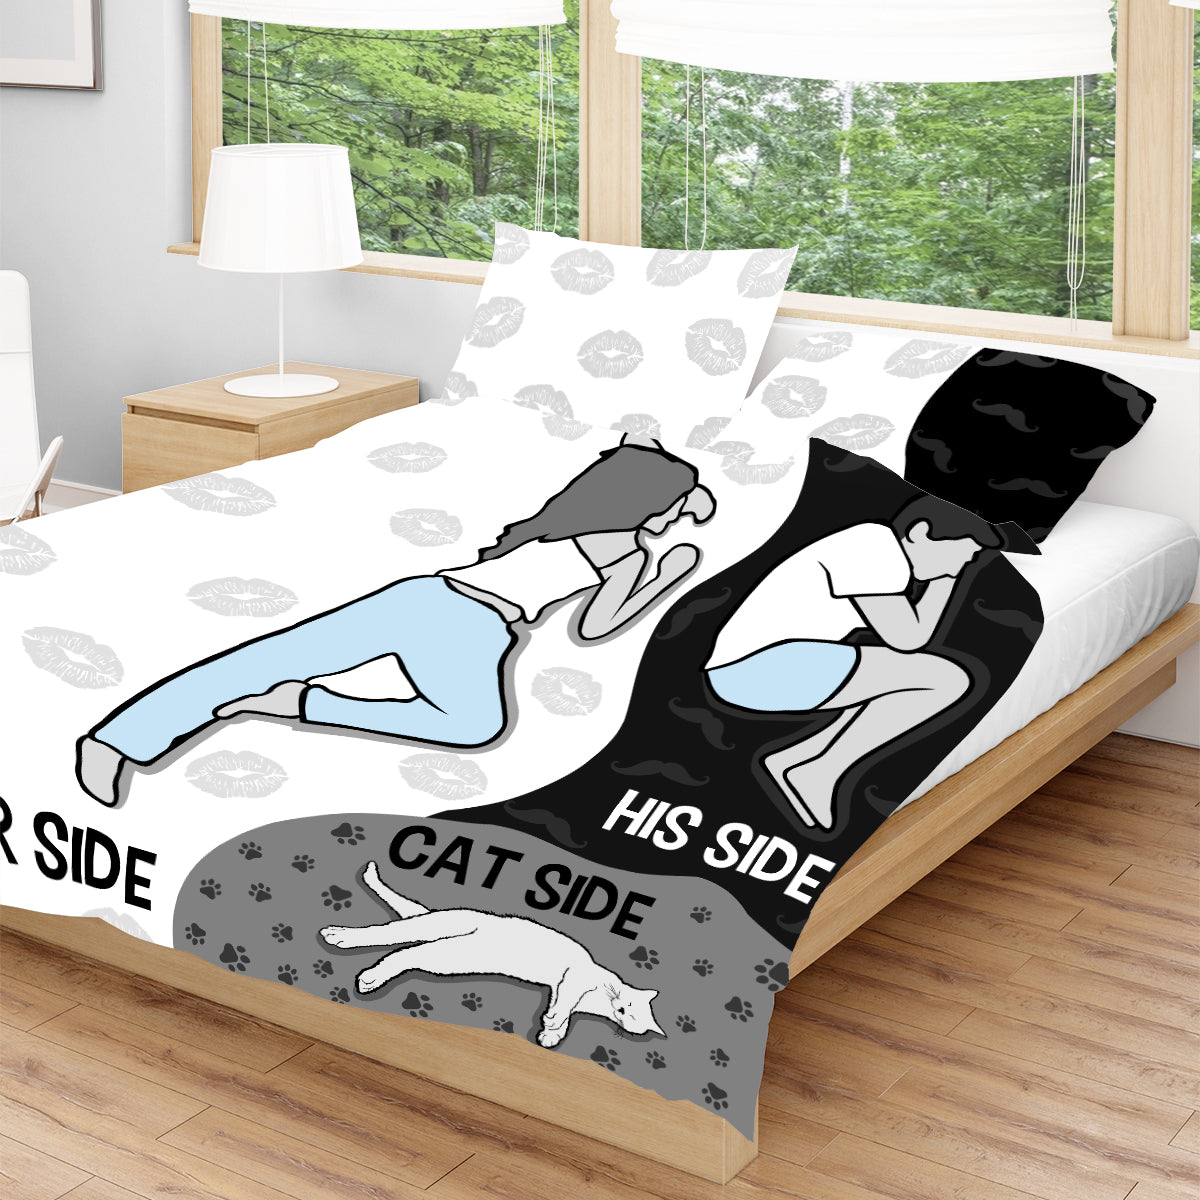 Her Side, His Side, Cat Side Bedding Set